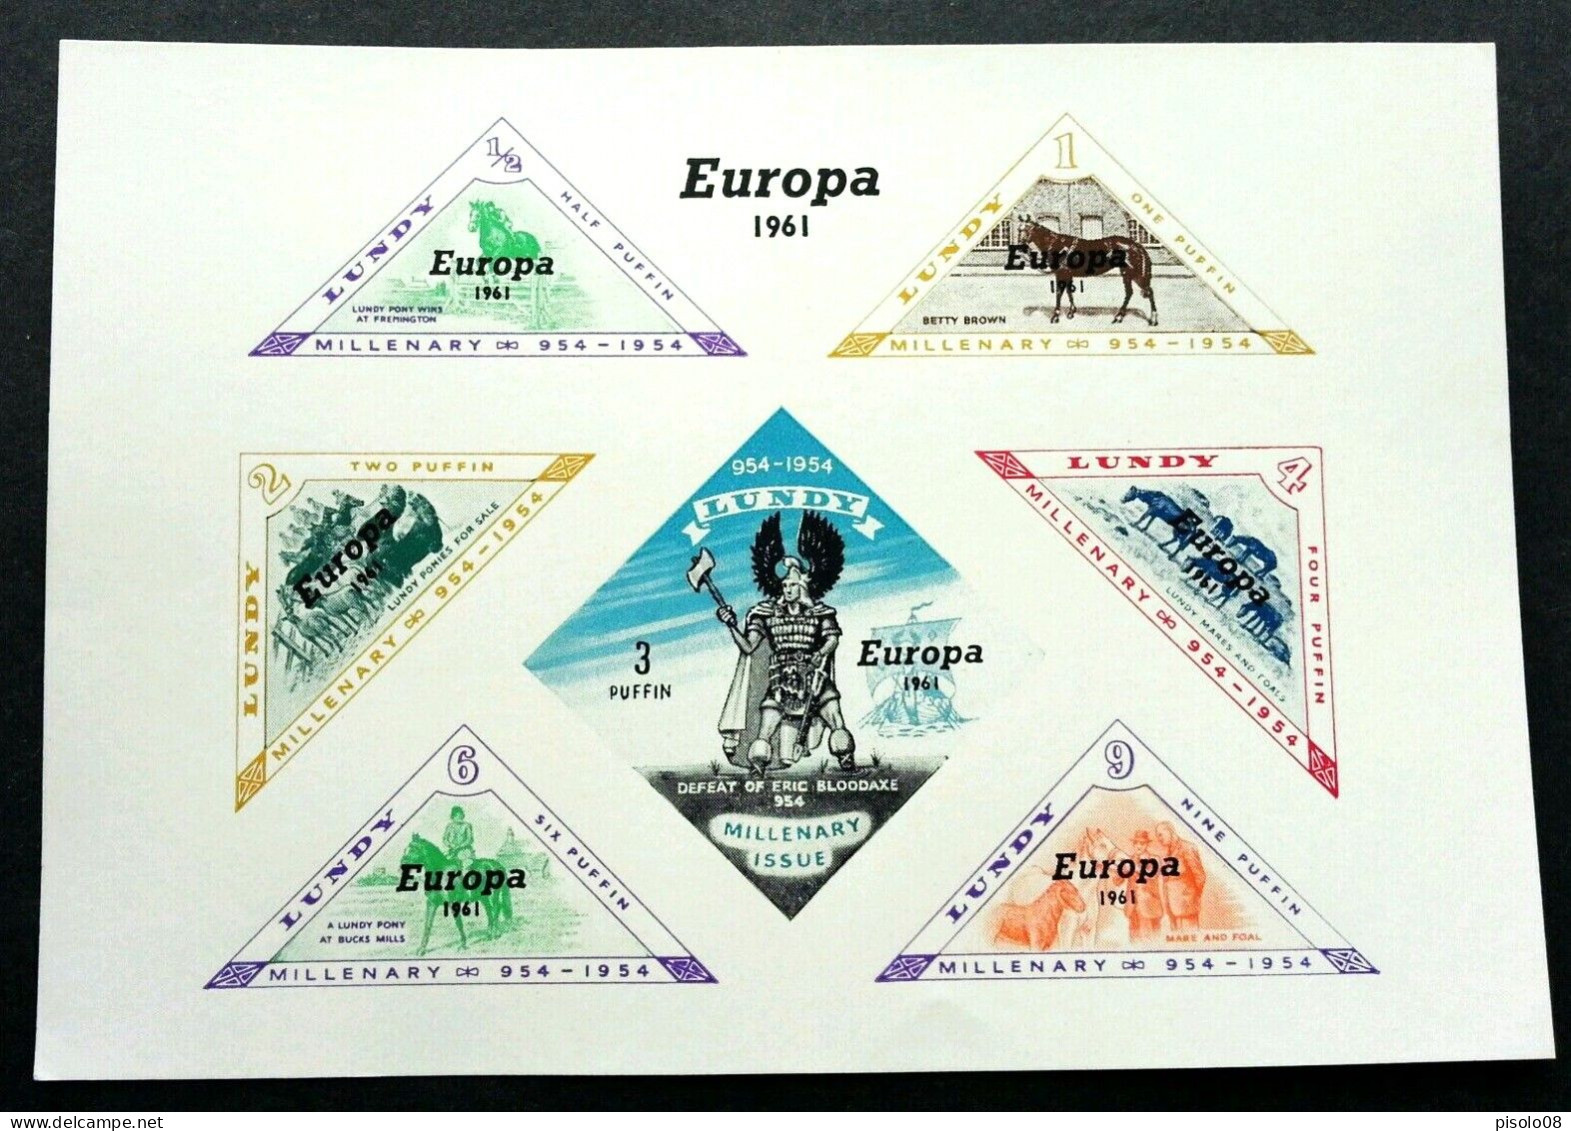 EUROPA JUGOSLAVIA 1961 LUNDY MILLENARY 954-1954 FOGLIETTO - Hojas Y Bloques